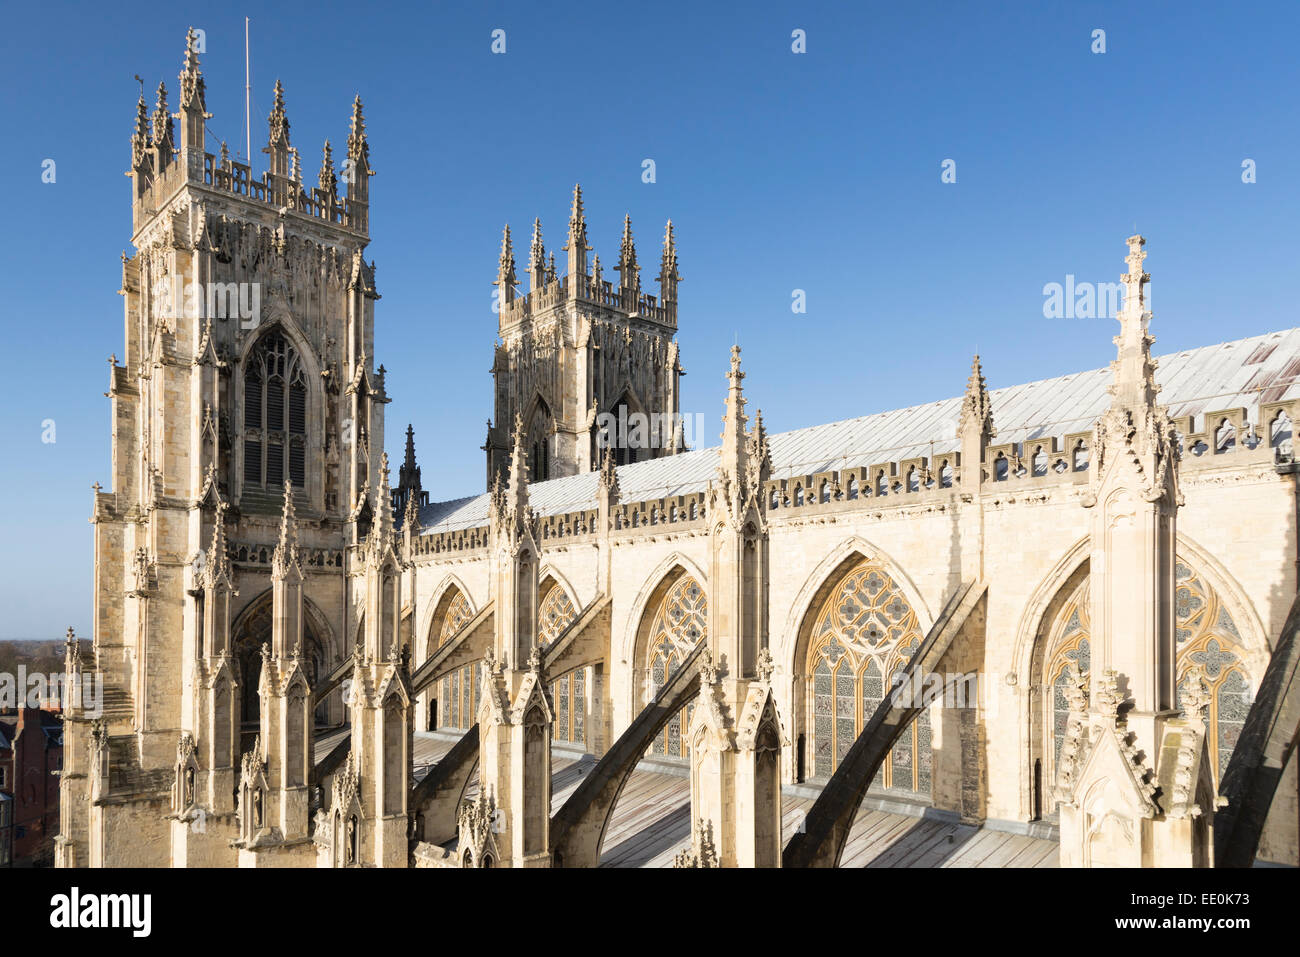 La cathédrale de York, North Yorkshire, Royaume-Uni Banque D'Images